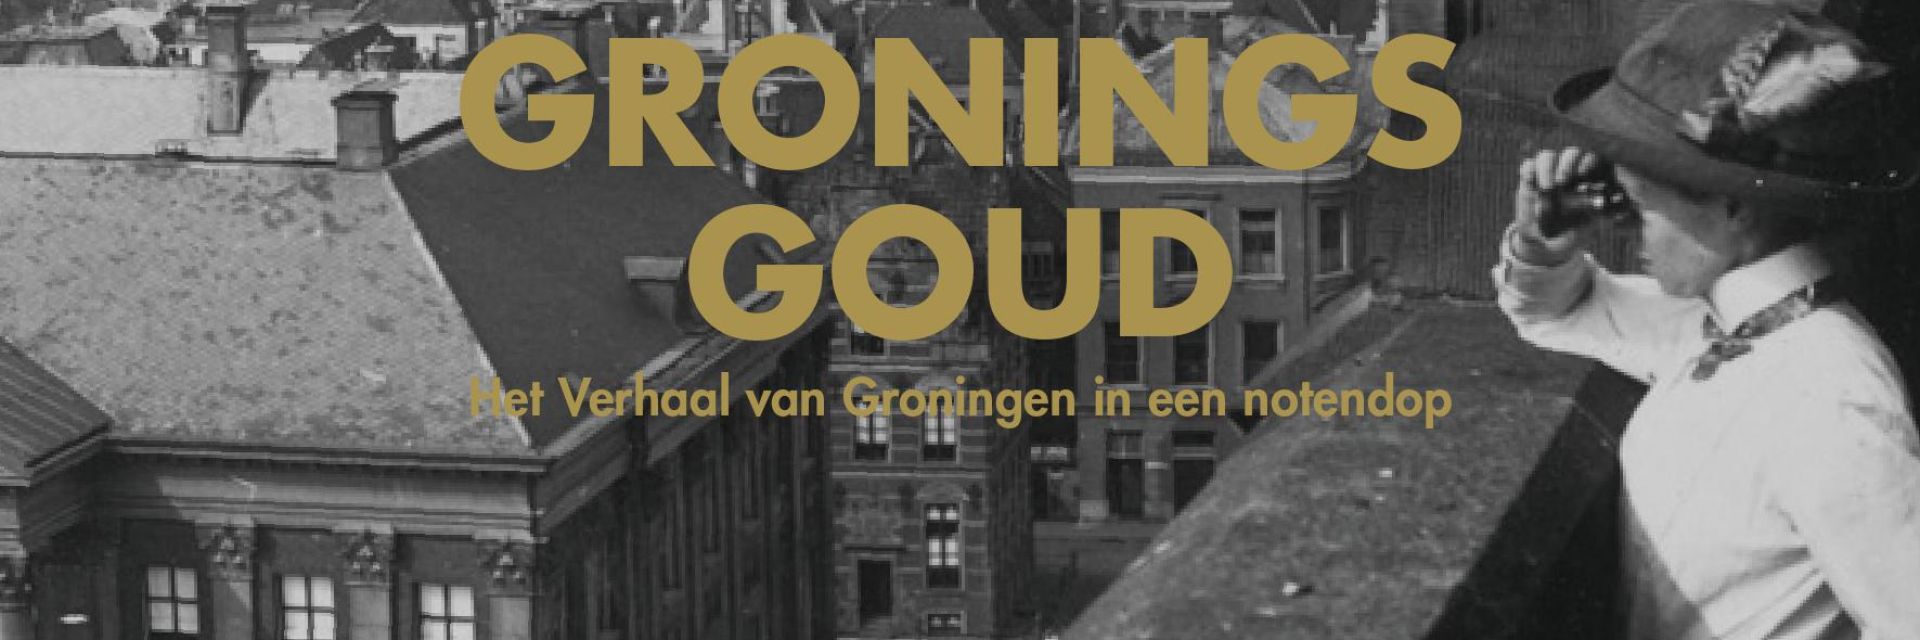 Gronings Goud: Het Verhaal van Groningen in een notendop